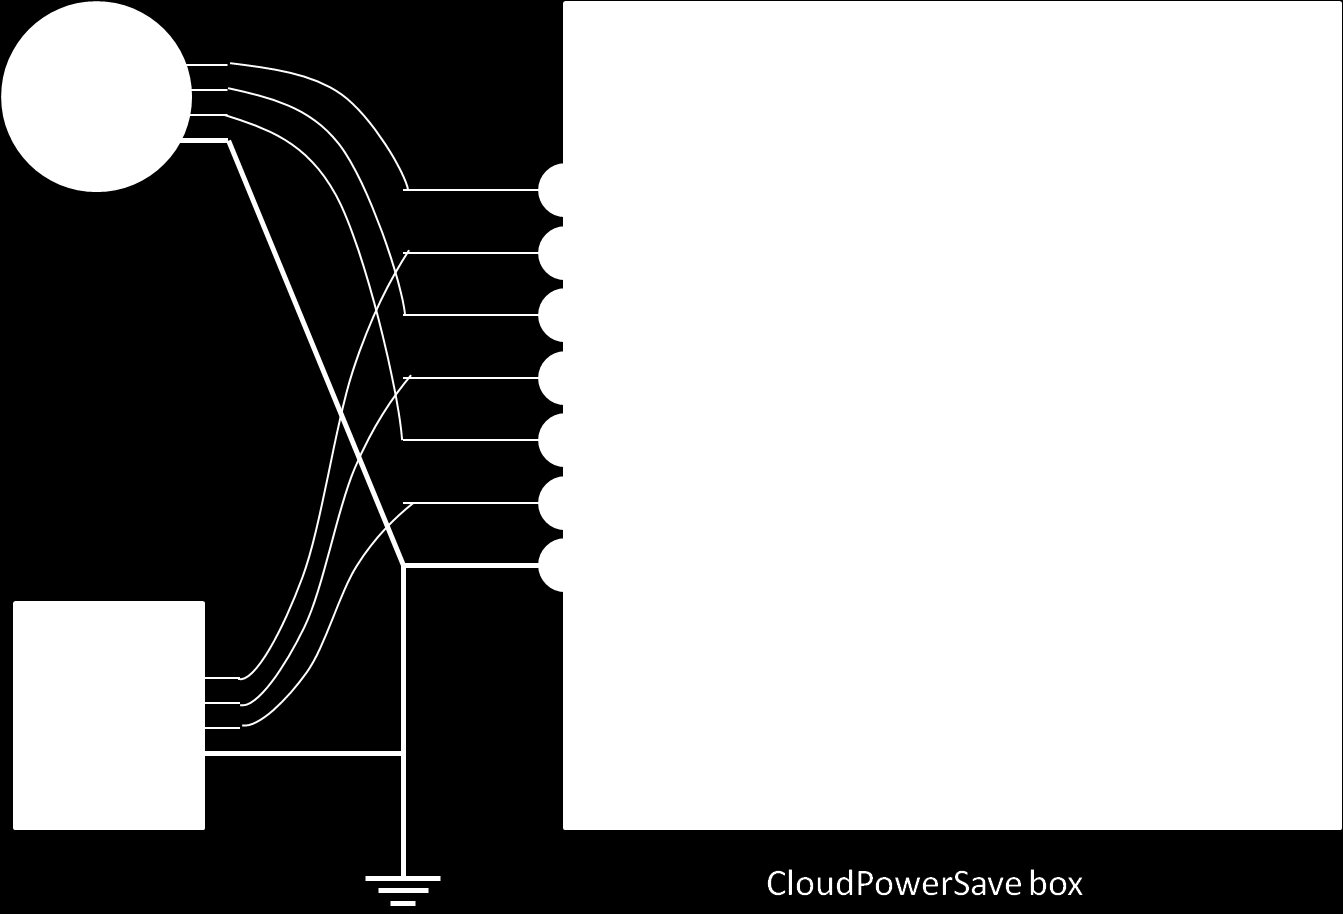 Figura 2.4: Estrutura de um CloudPowerSave Box. Nesta montagem, os medidores não possuem sua carcaça e são conectados a um hub USB, que por sua vez é conectado ao mini computador.